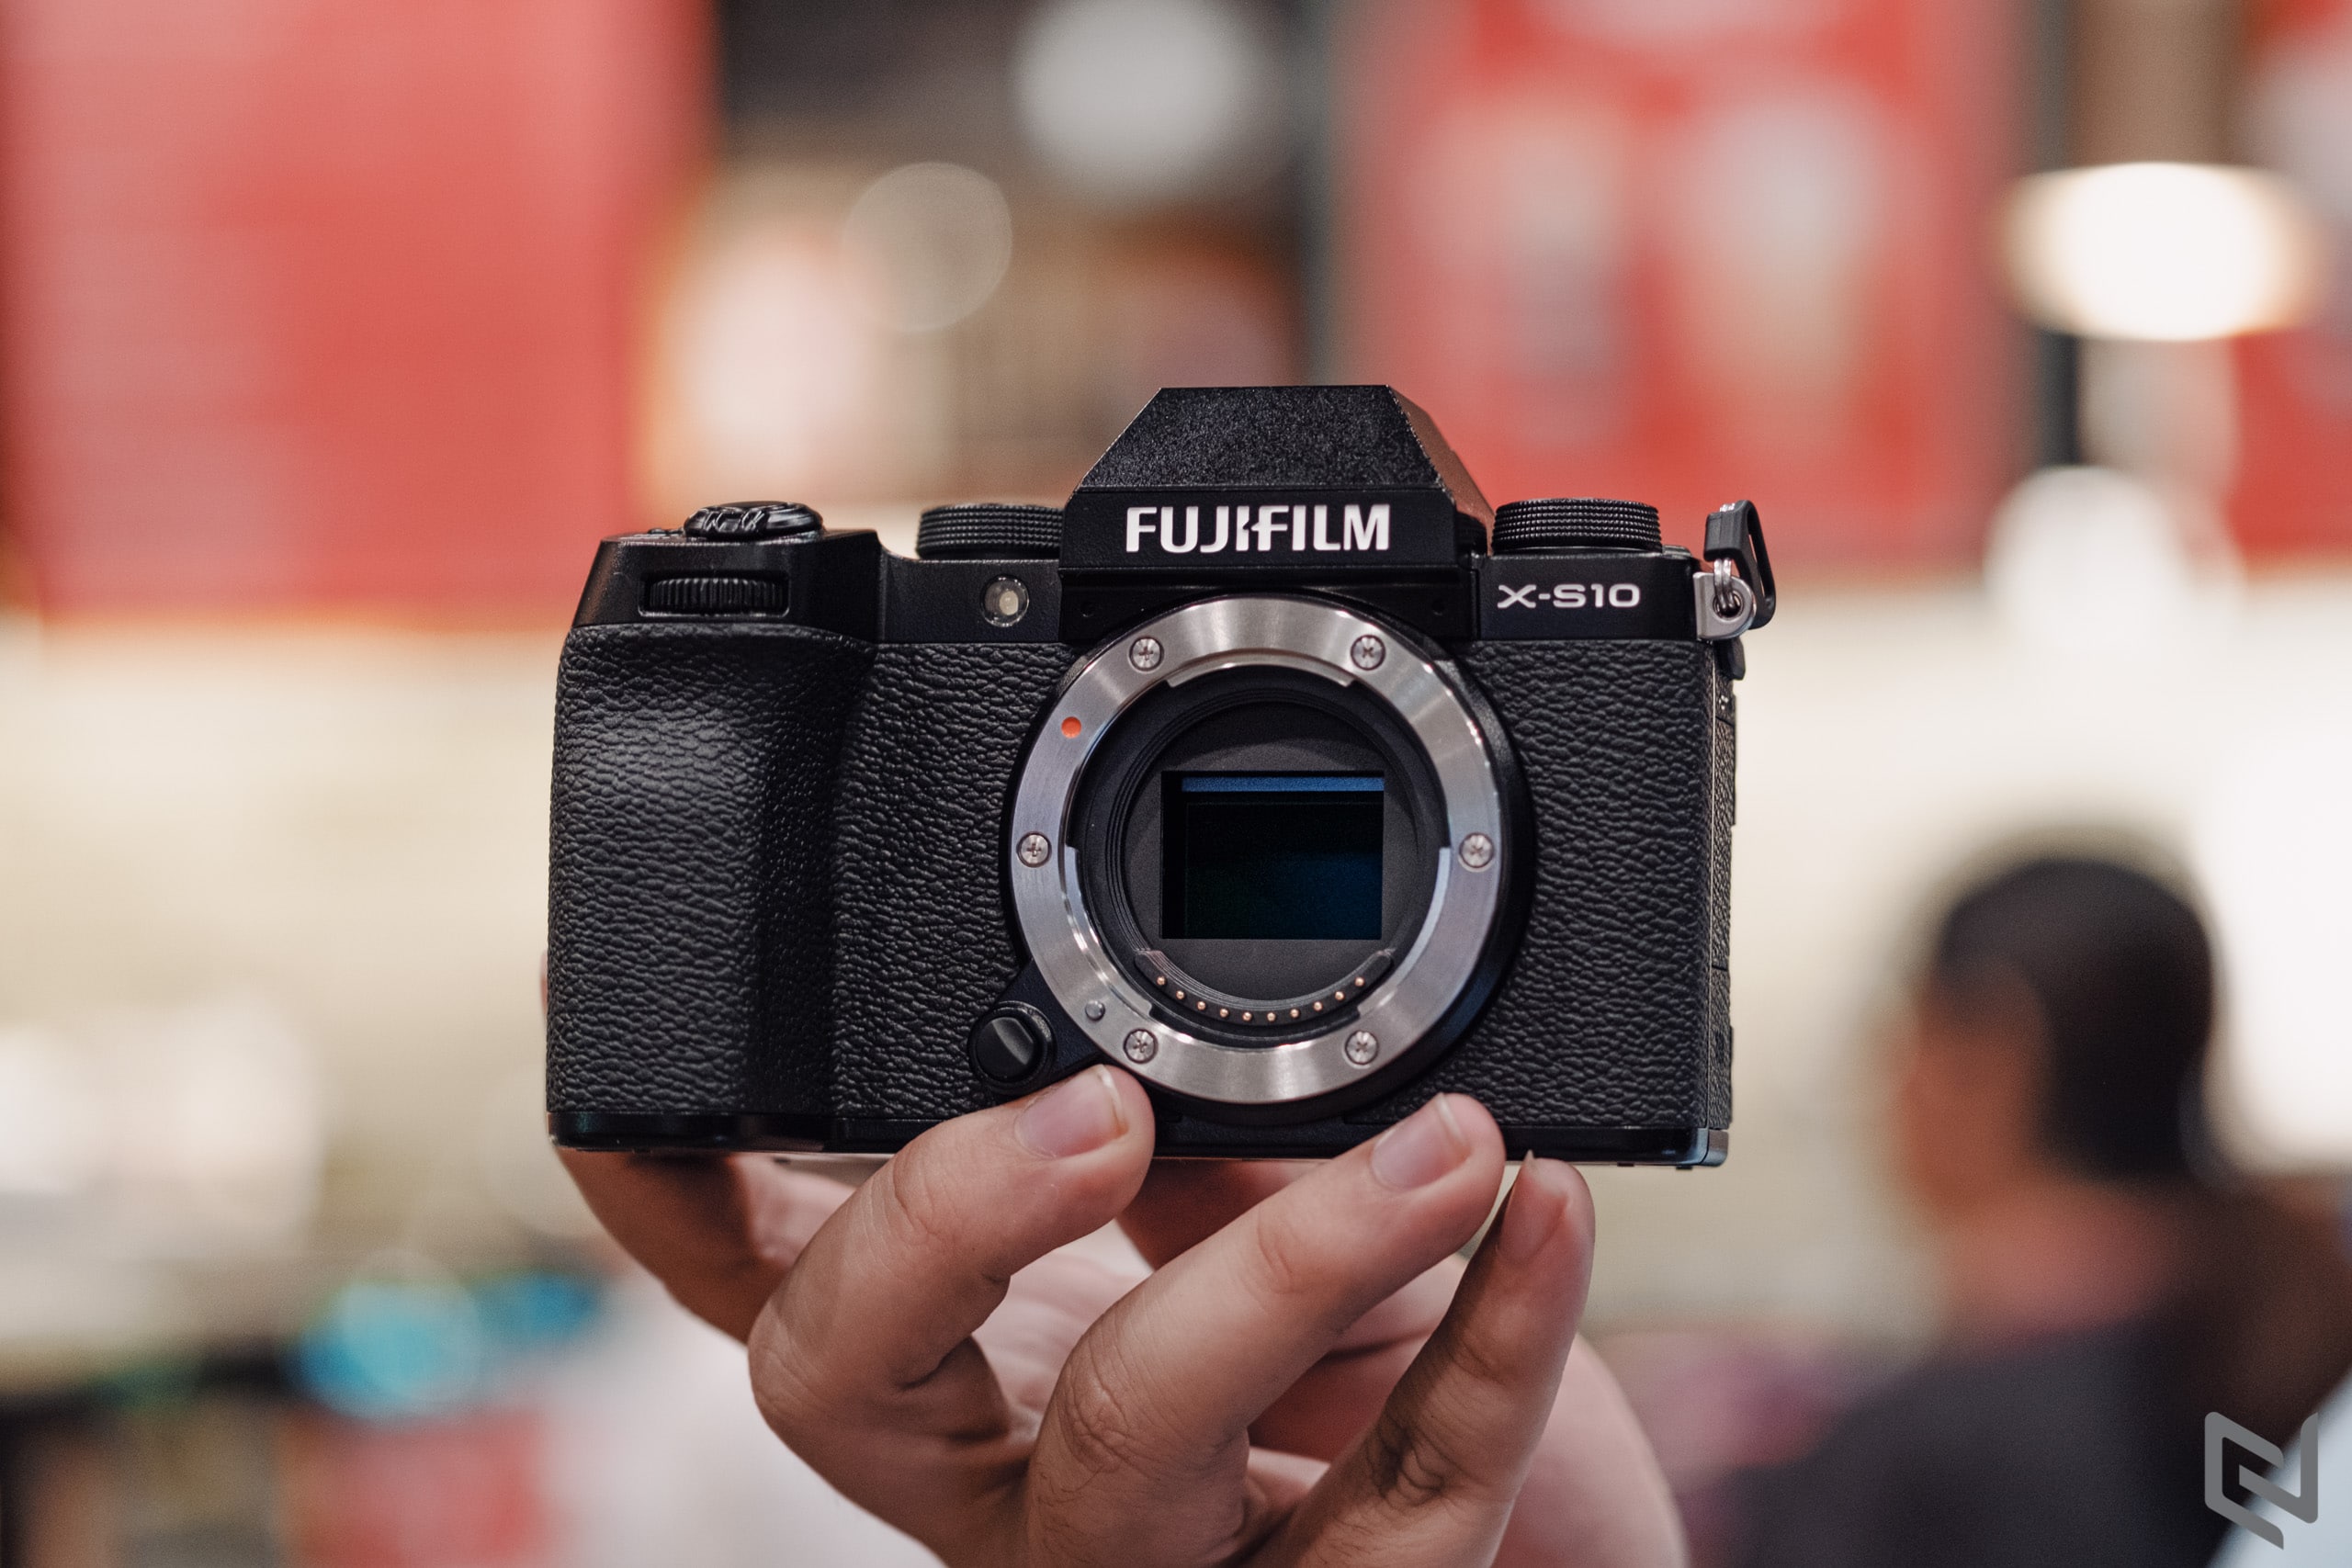 Fujifilm tung firmware X-S10 mới, sửa lỗi nhỏ và hỗ trợ máy in ảnh từ Fujifilm